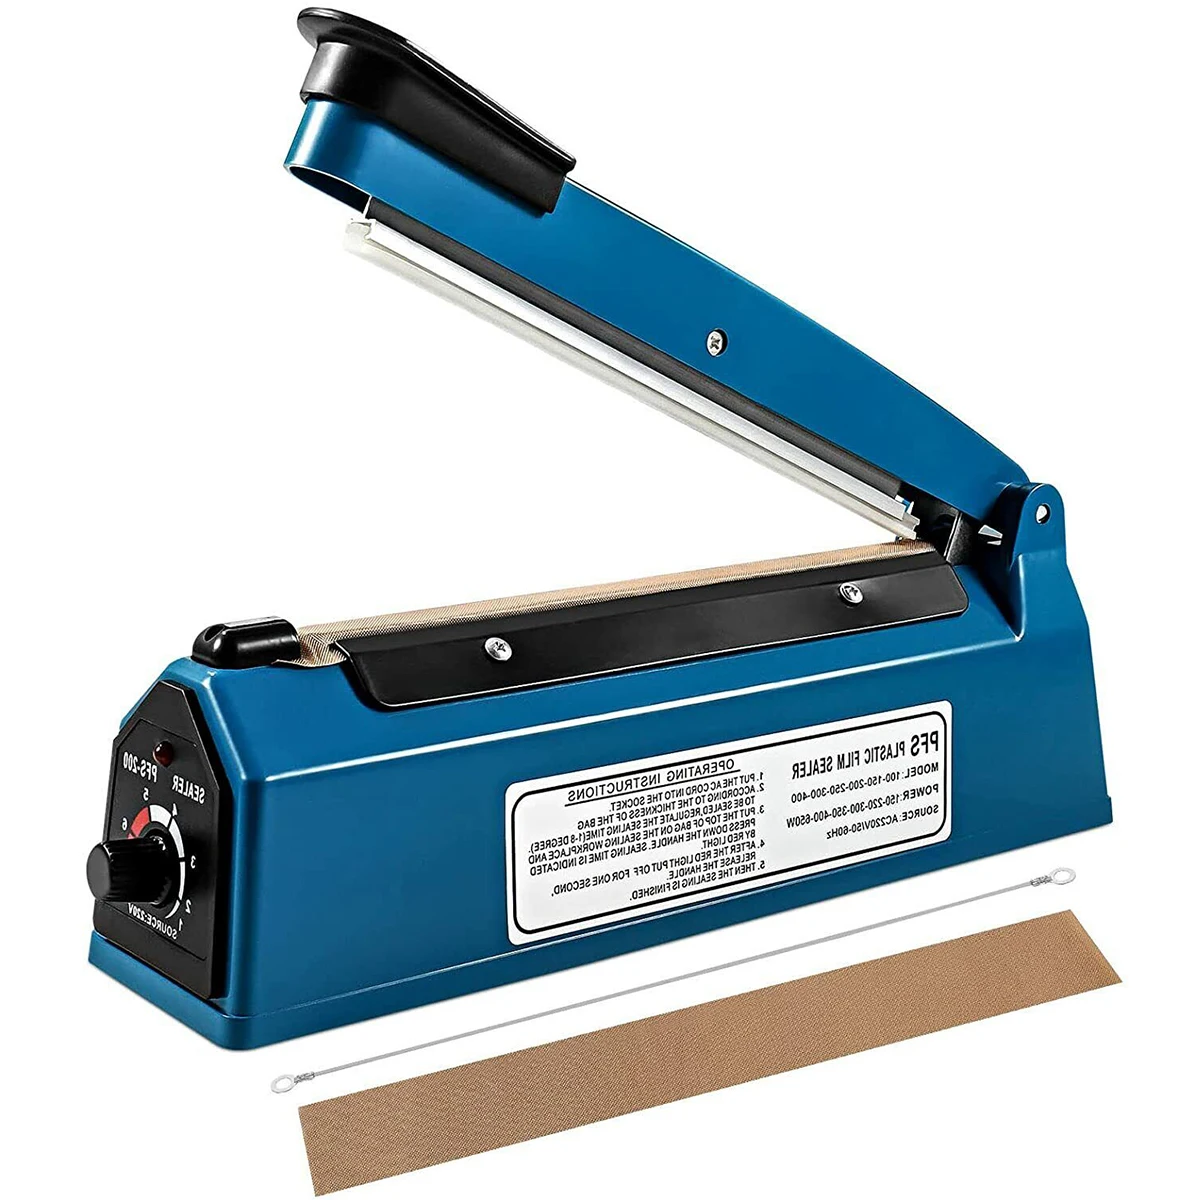 Impulse Heat Sealer Manual Heat Sealer Machine with Repair Kit 300mm Electric Impulse Sealer Plastic Poly Bag Heat Sealer